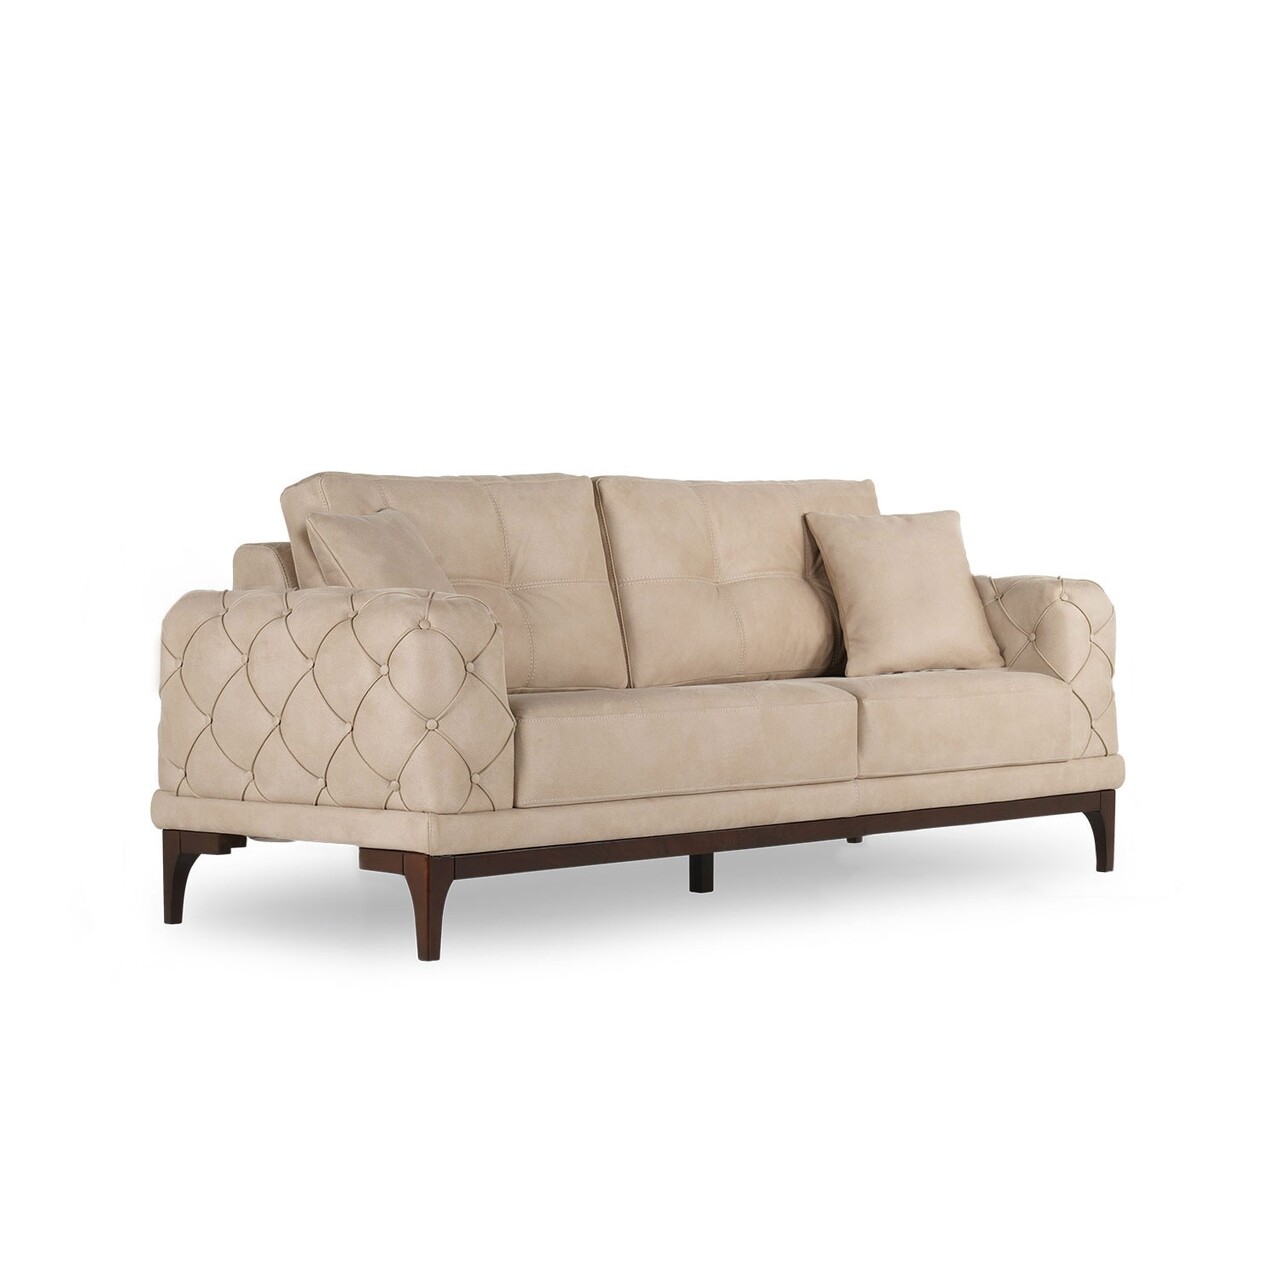 Lale kihúzható kanapé, ndesign, 2 személyes, 175x97x84 cm, fa, krémszín